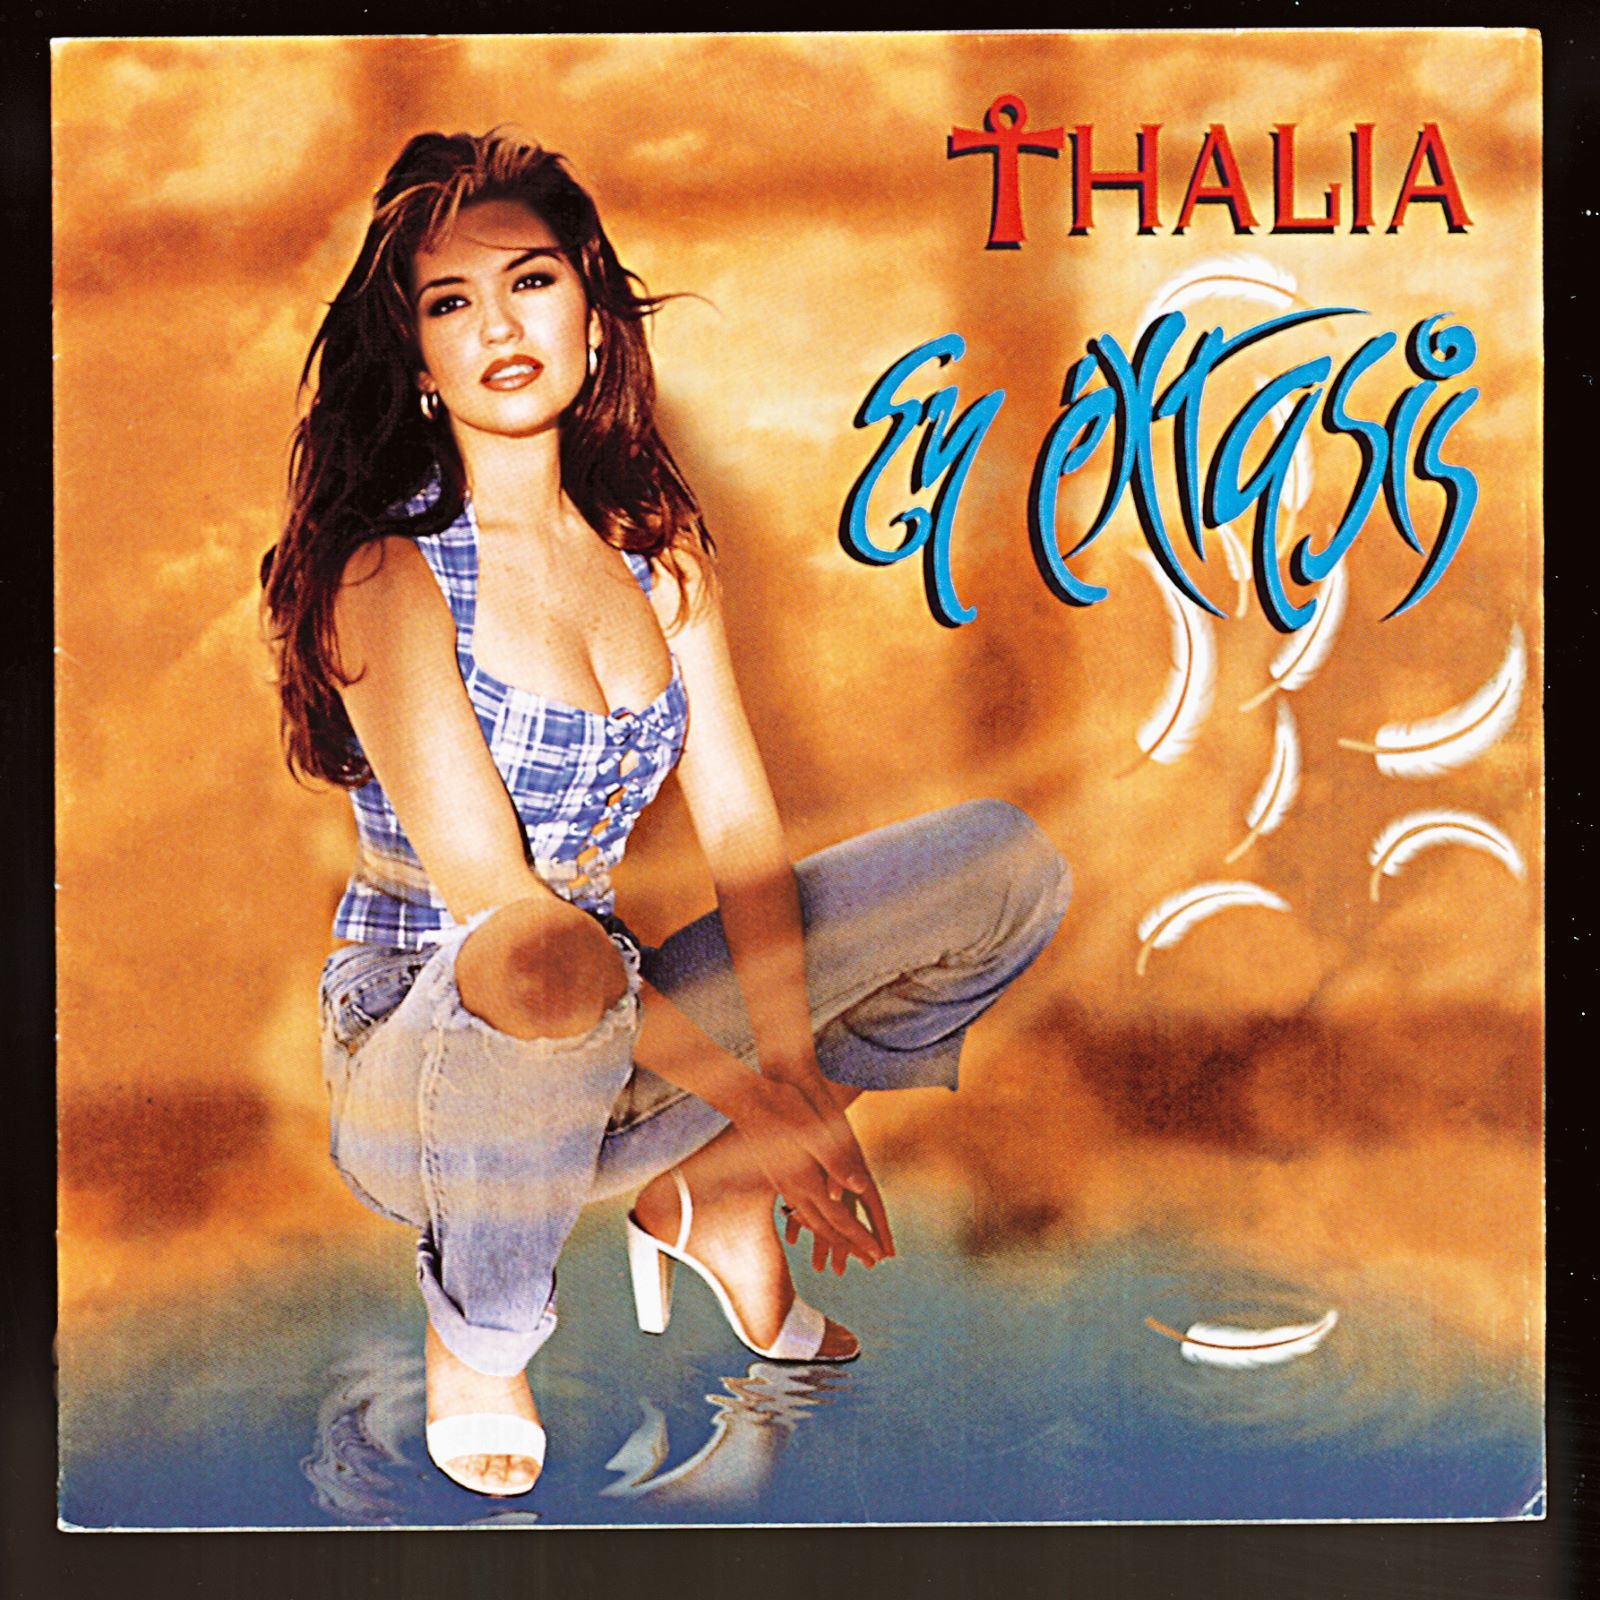 Thalía: 50 imágenes de la vida y canciones de la cantante